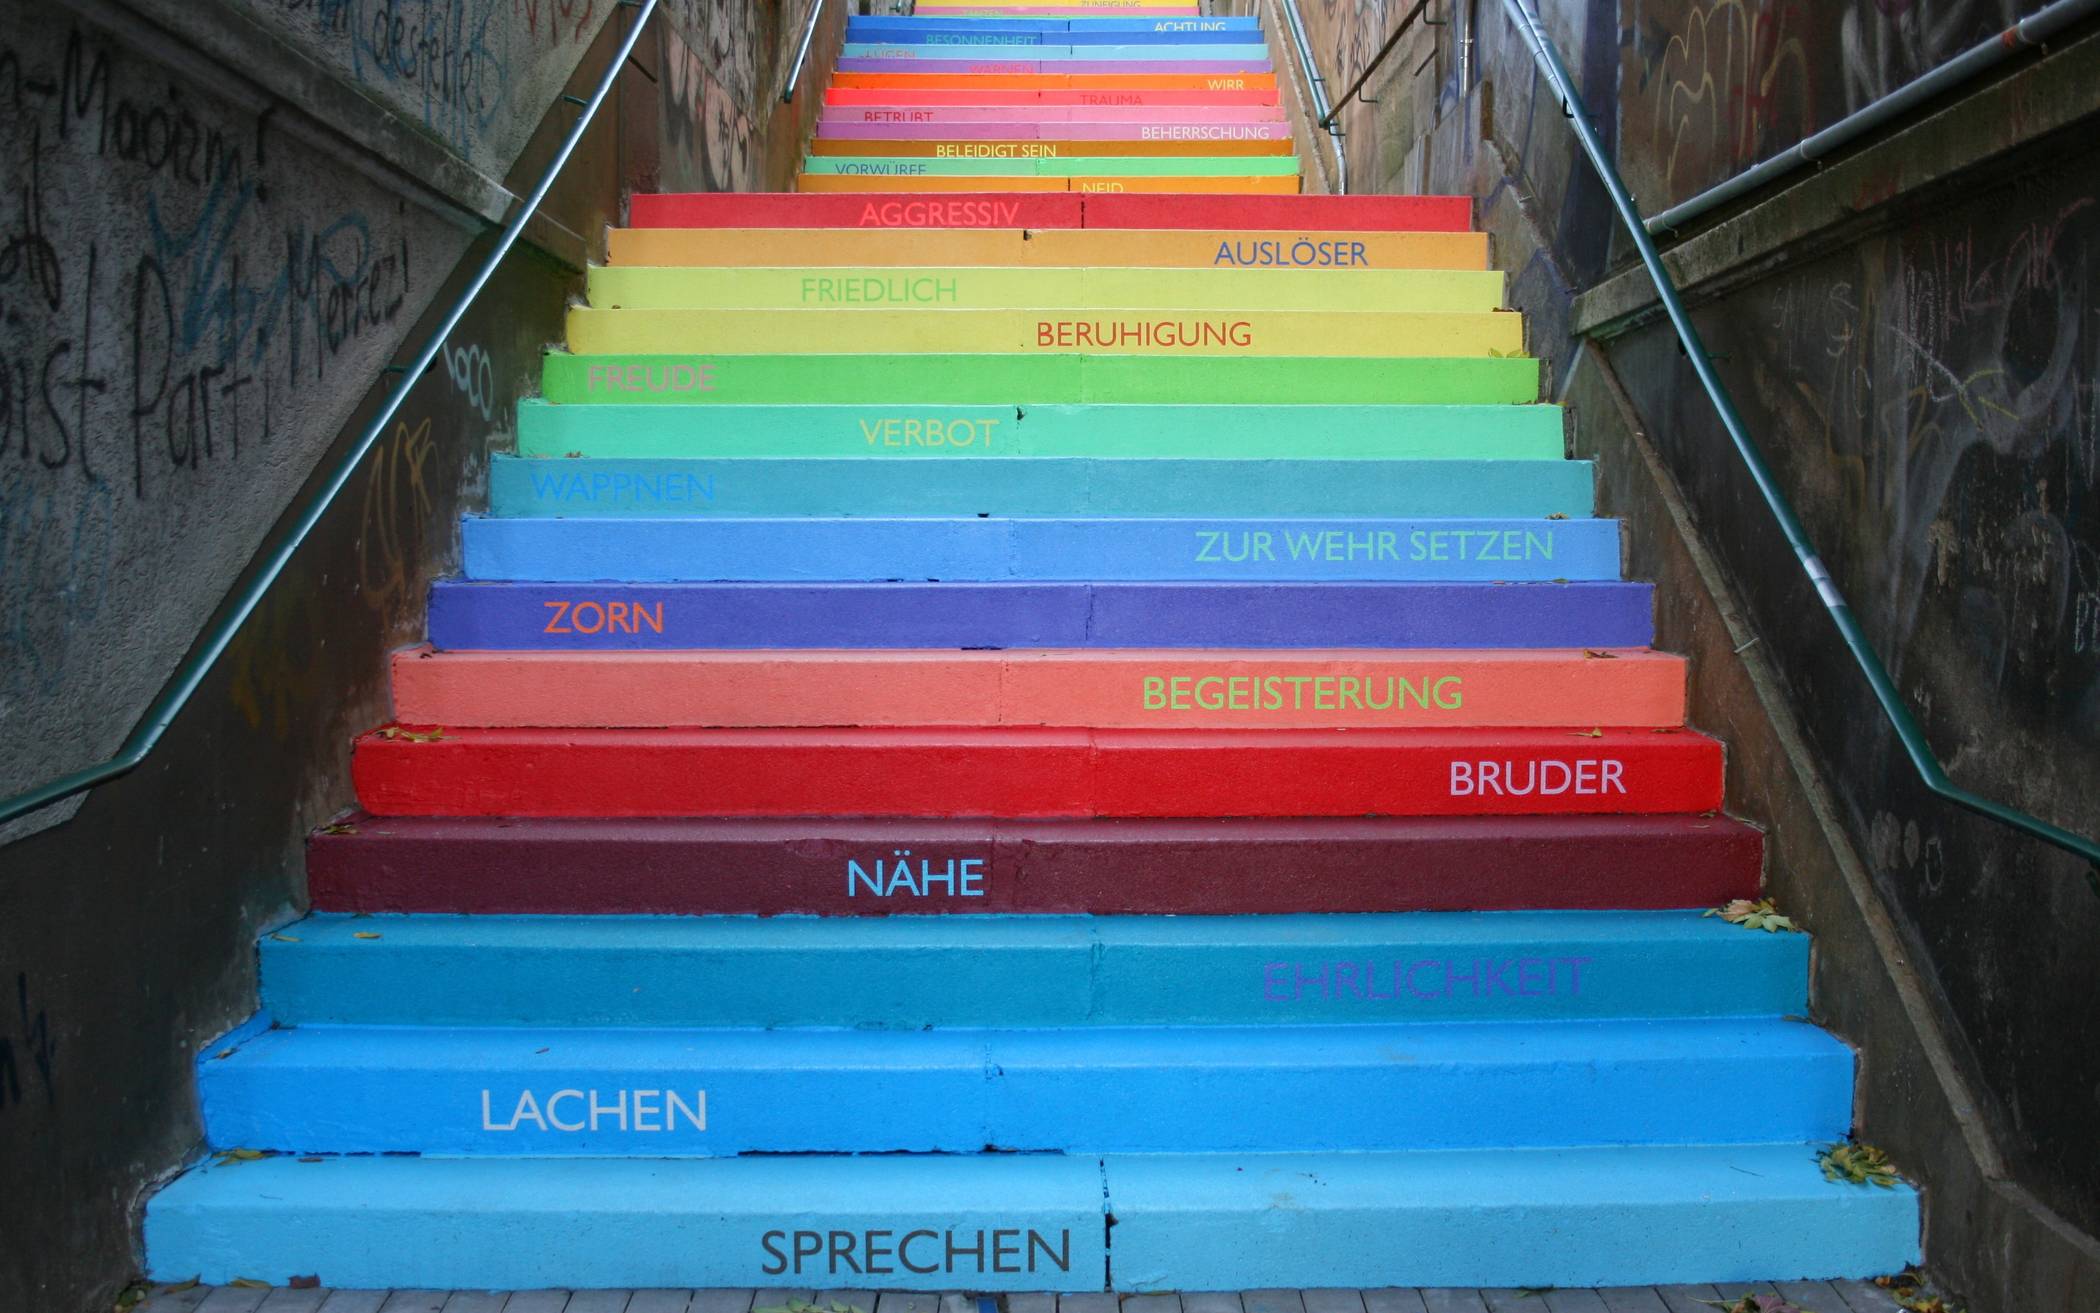  Die Holsteiner Treppe in Wuppertal – mehr als ein Gehweg. 